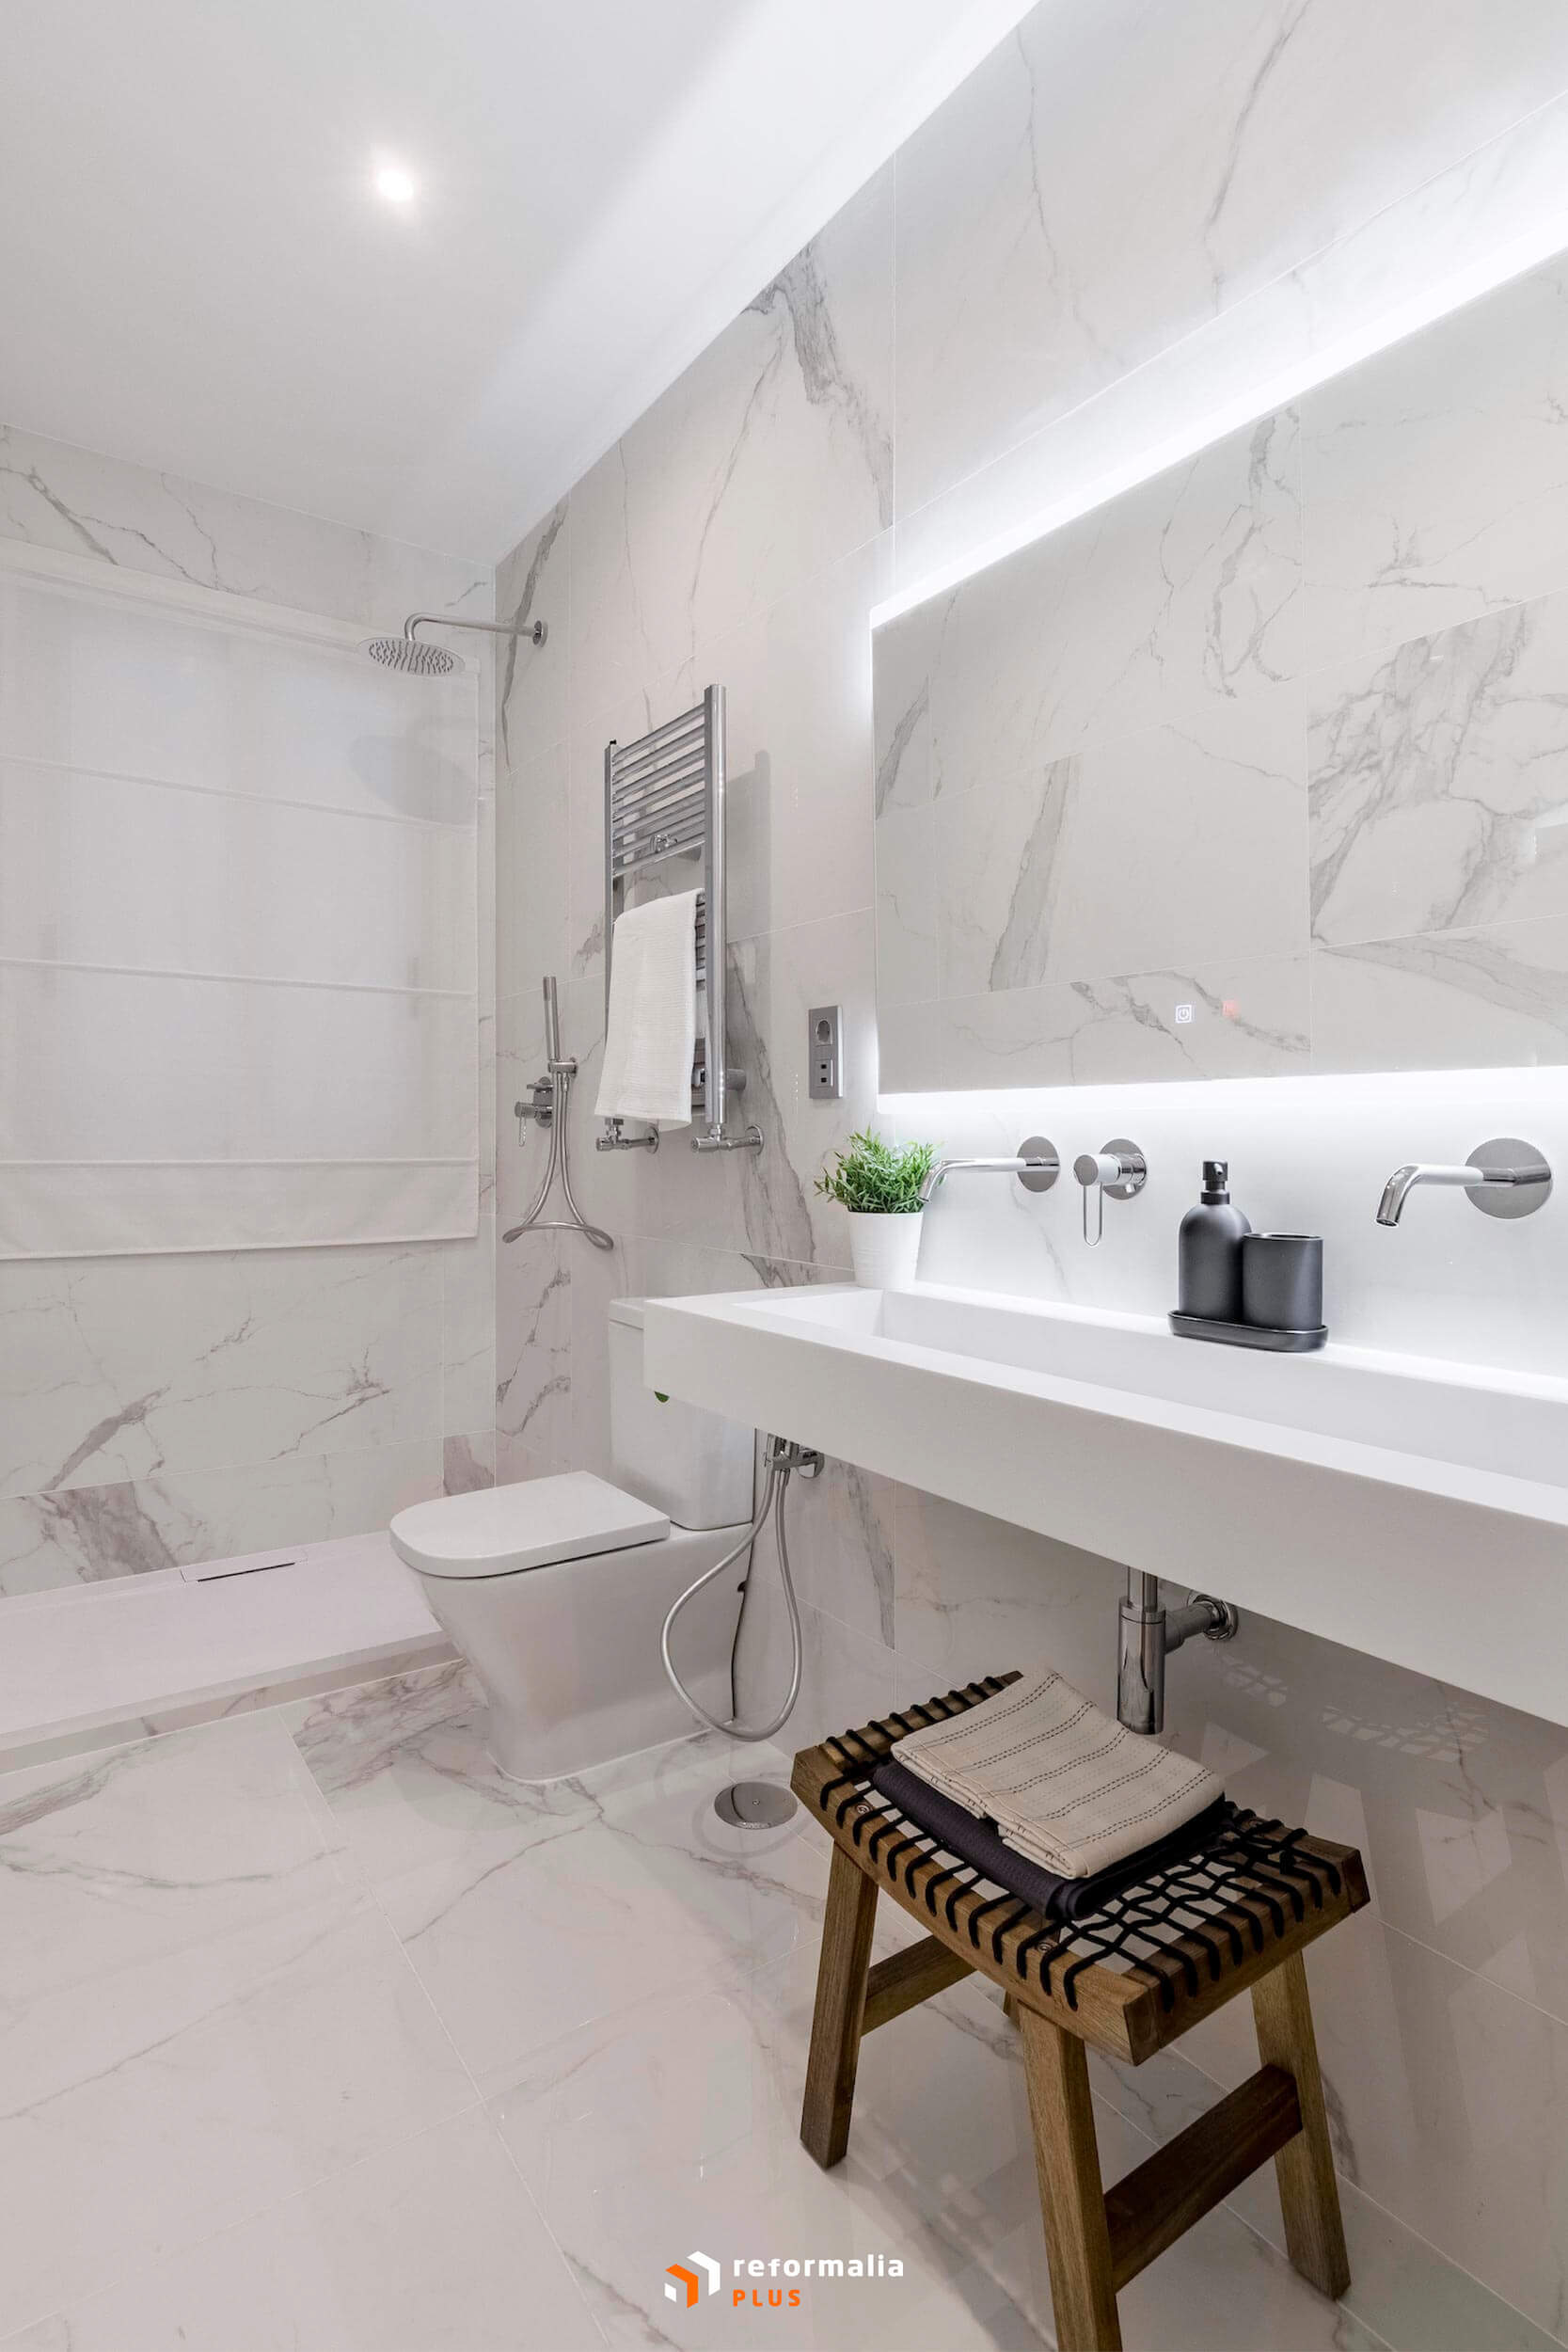 Reformalia Servis - servicios para el hogar baño completo diseño